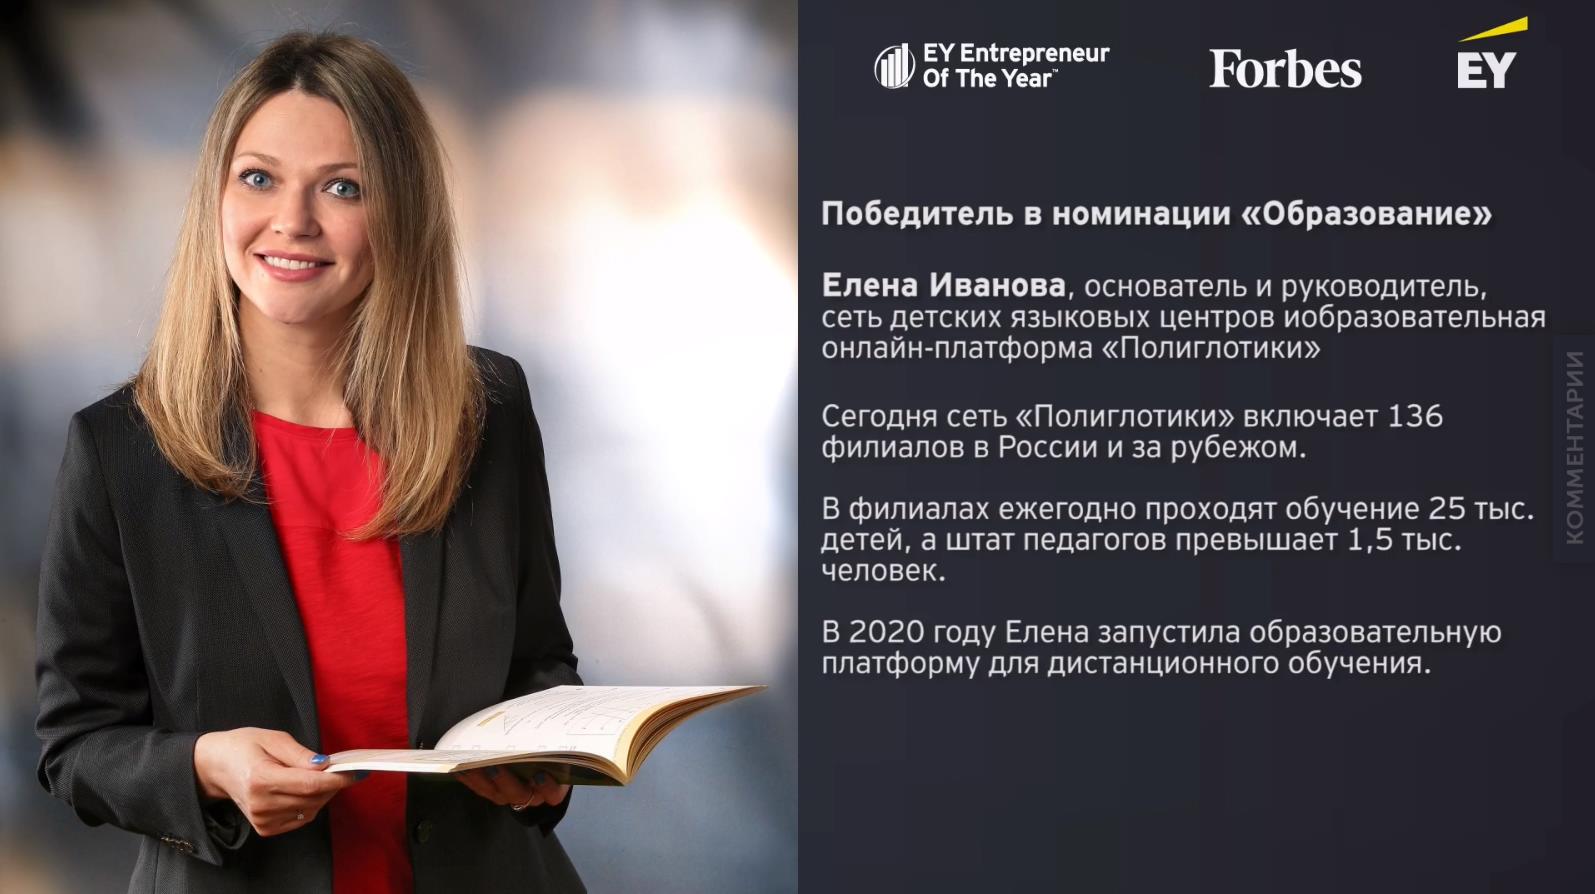 Елена Иванова одержала победу в номинации «Образование» в международном конкурсе EY «Предприниматель года 2020» в России